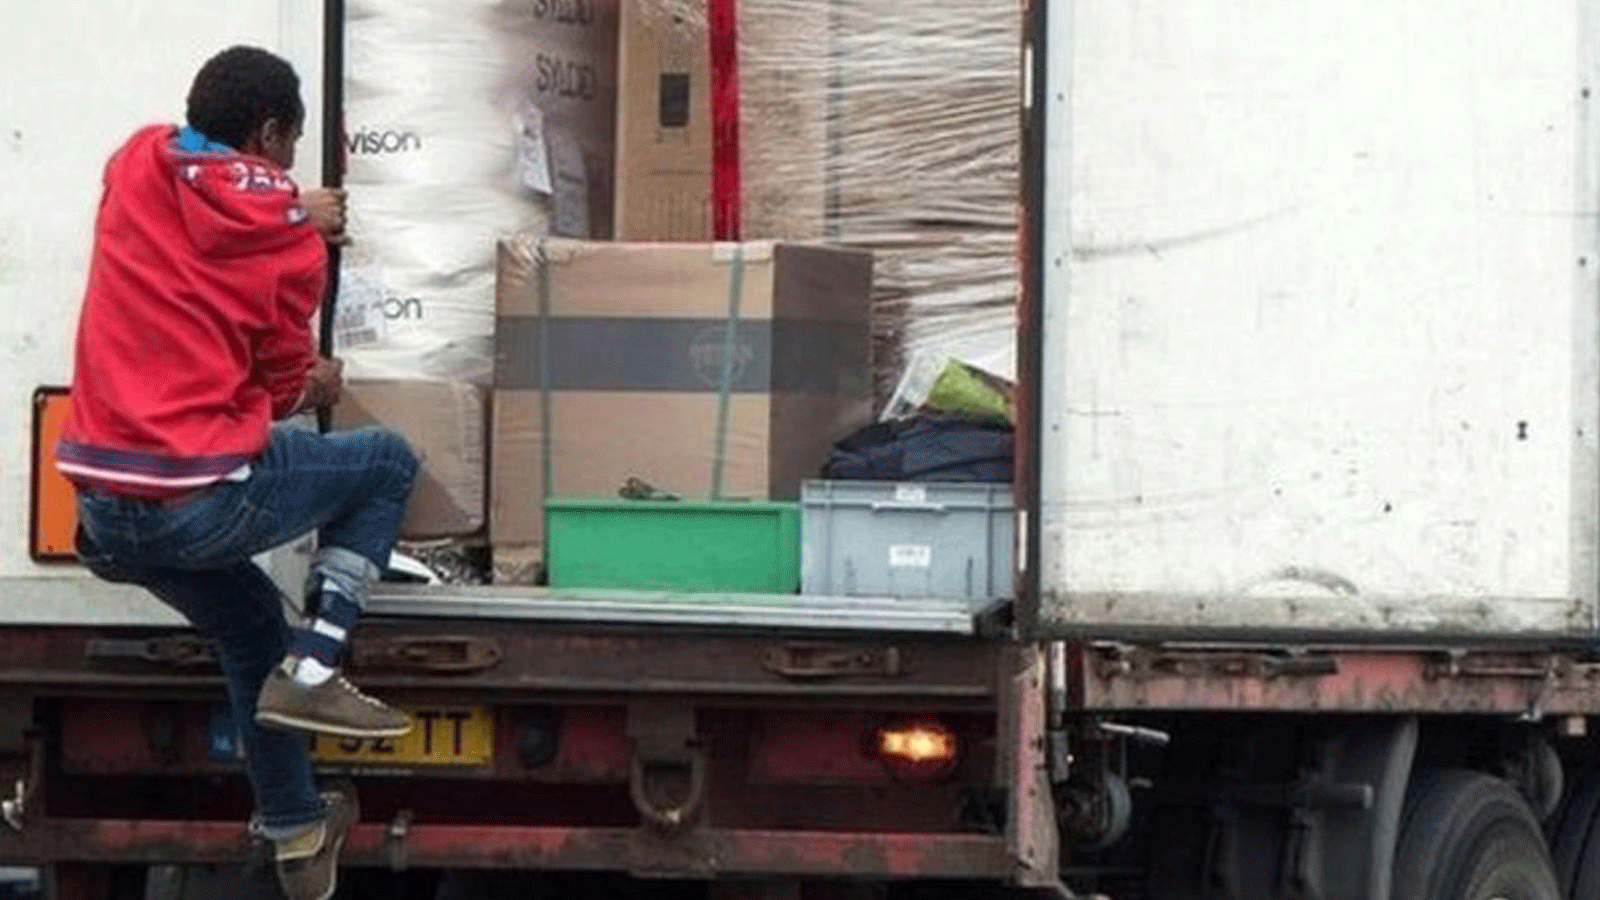 مهاجر يتسلق شاحنة محاولاً الوصول إلى المملكة المتحدة عبر كاليه مع فرار الناس من الأزمات الإنسانية